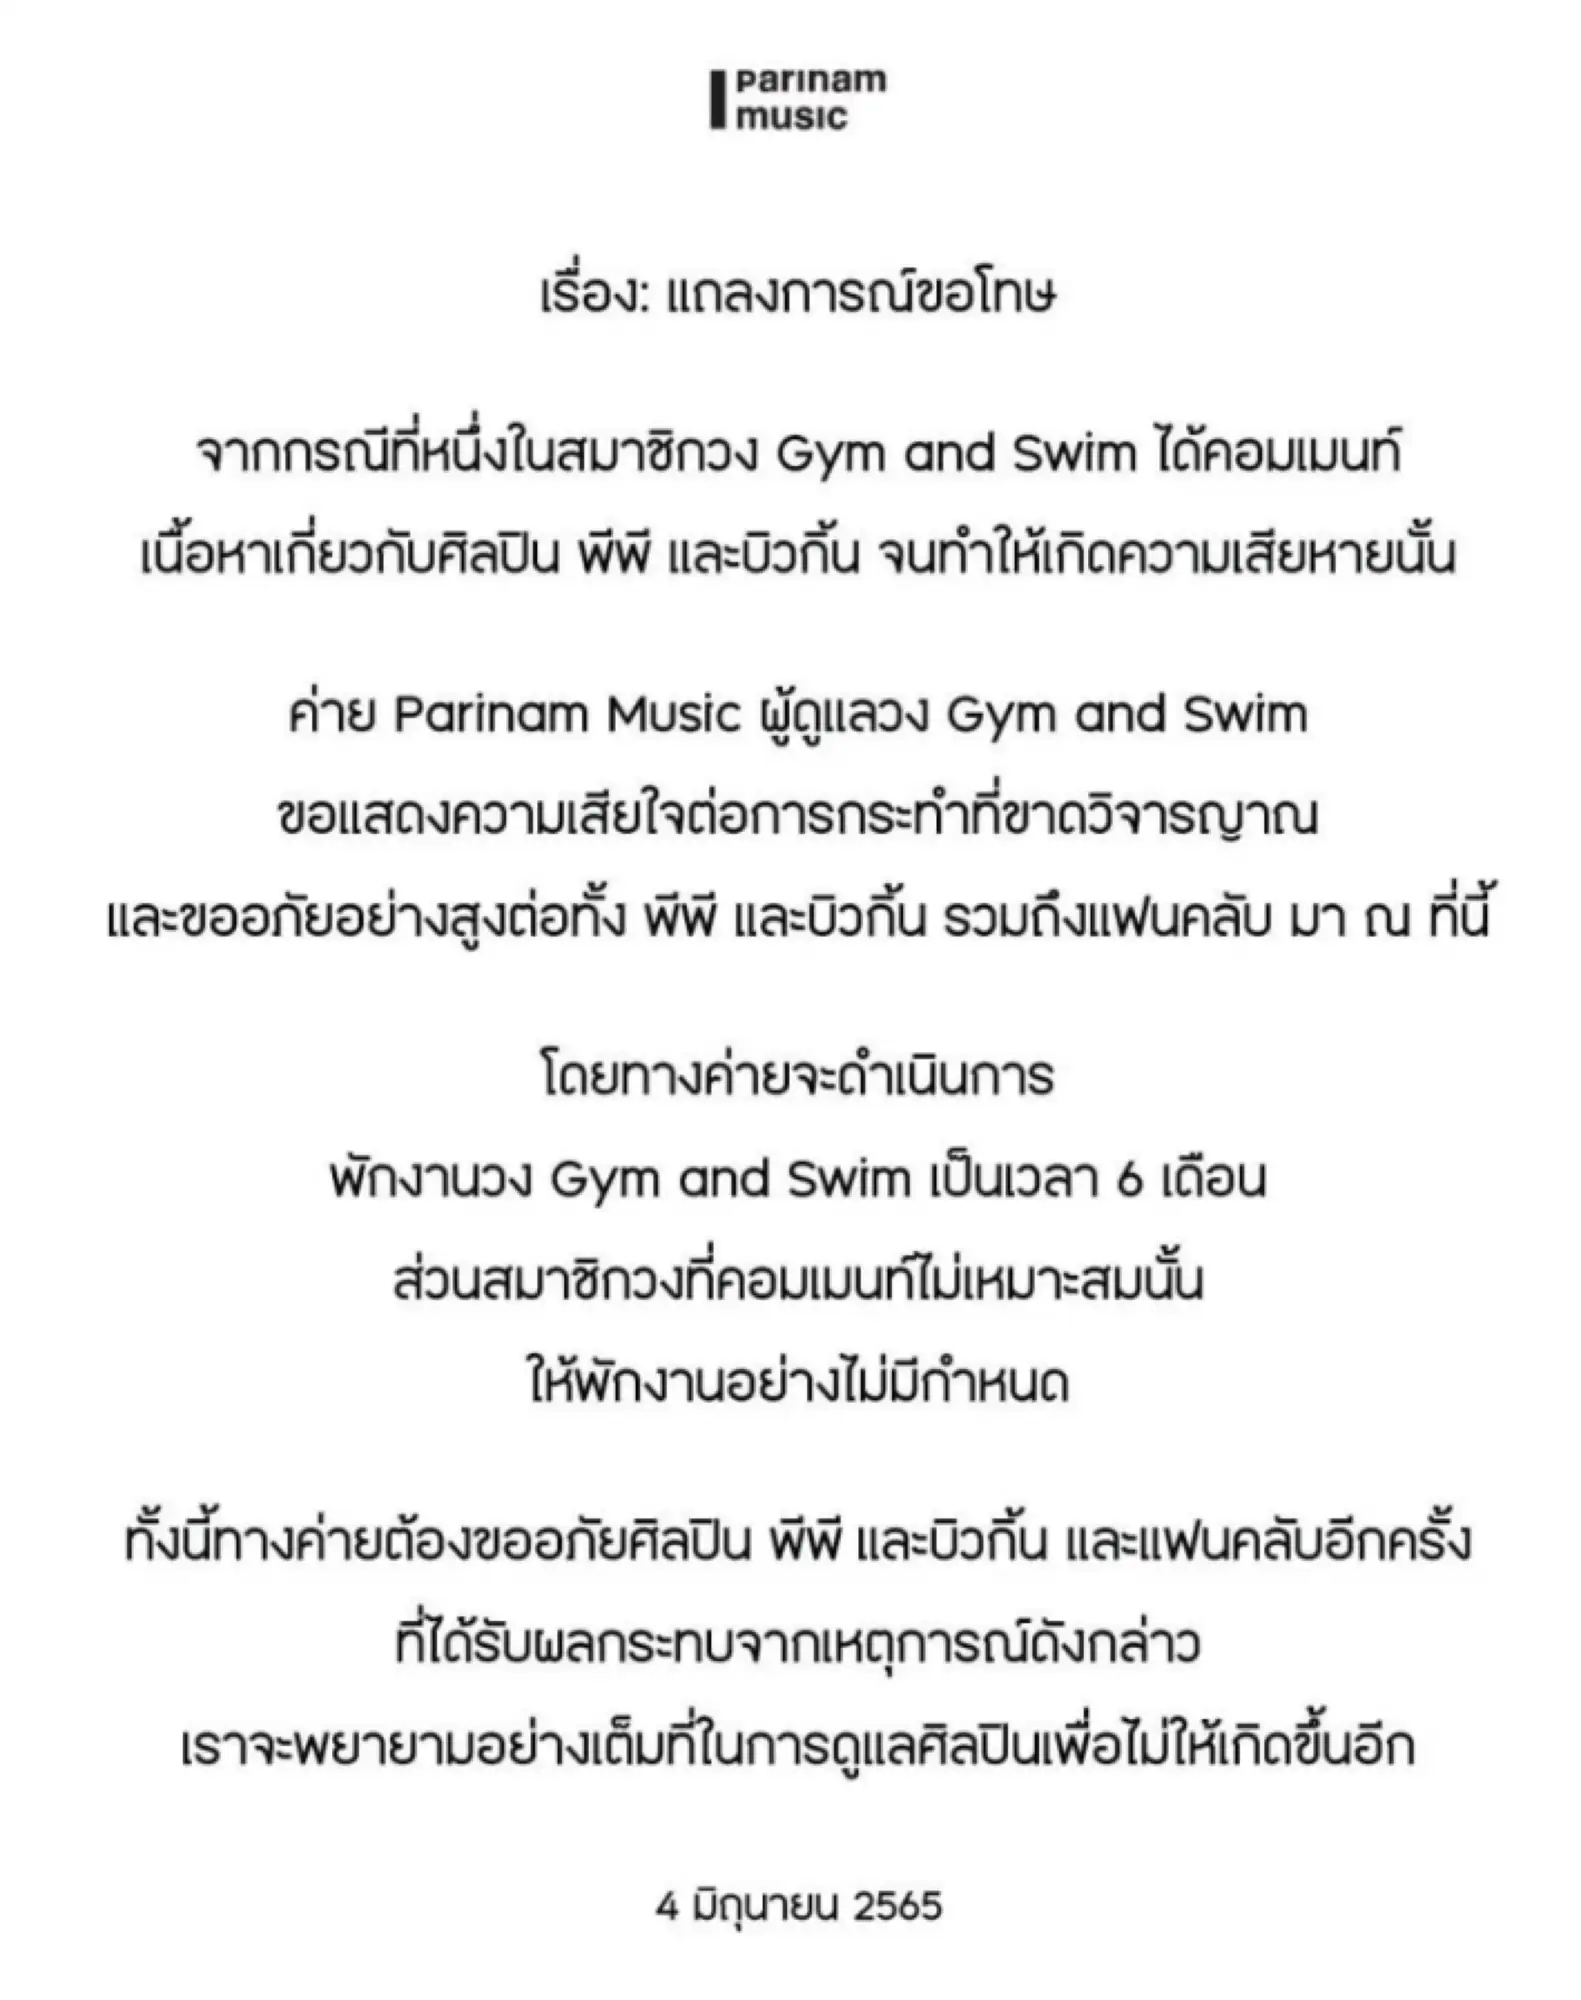 Gym and Swim乐队的所属公司Parinam Music向BKPP发出道歉声明（图片来源：沪江泰语）